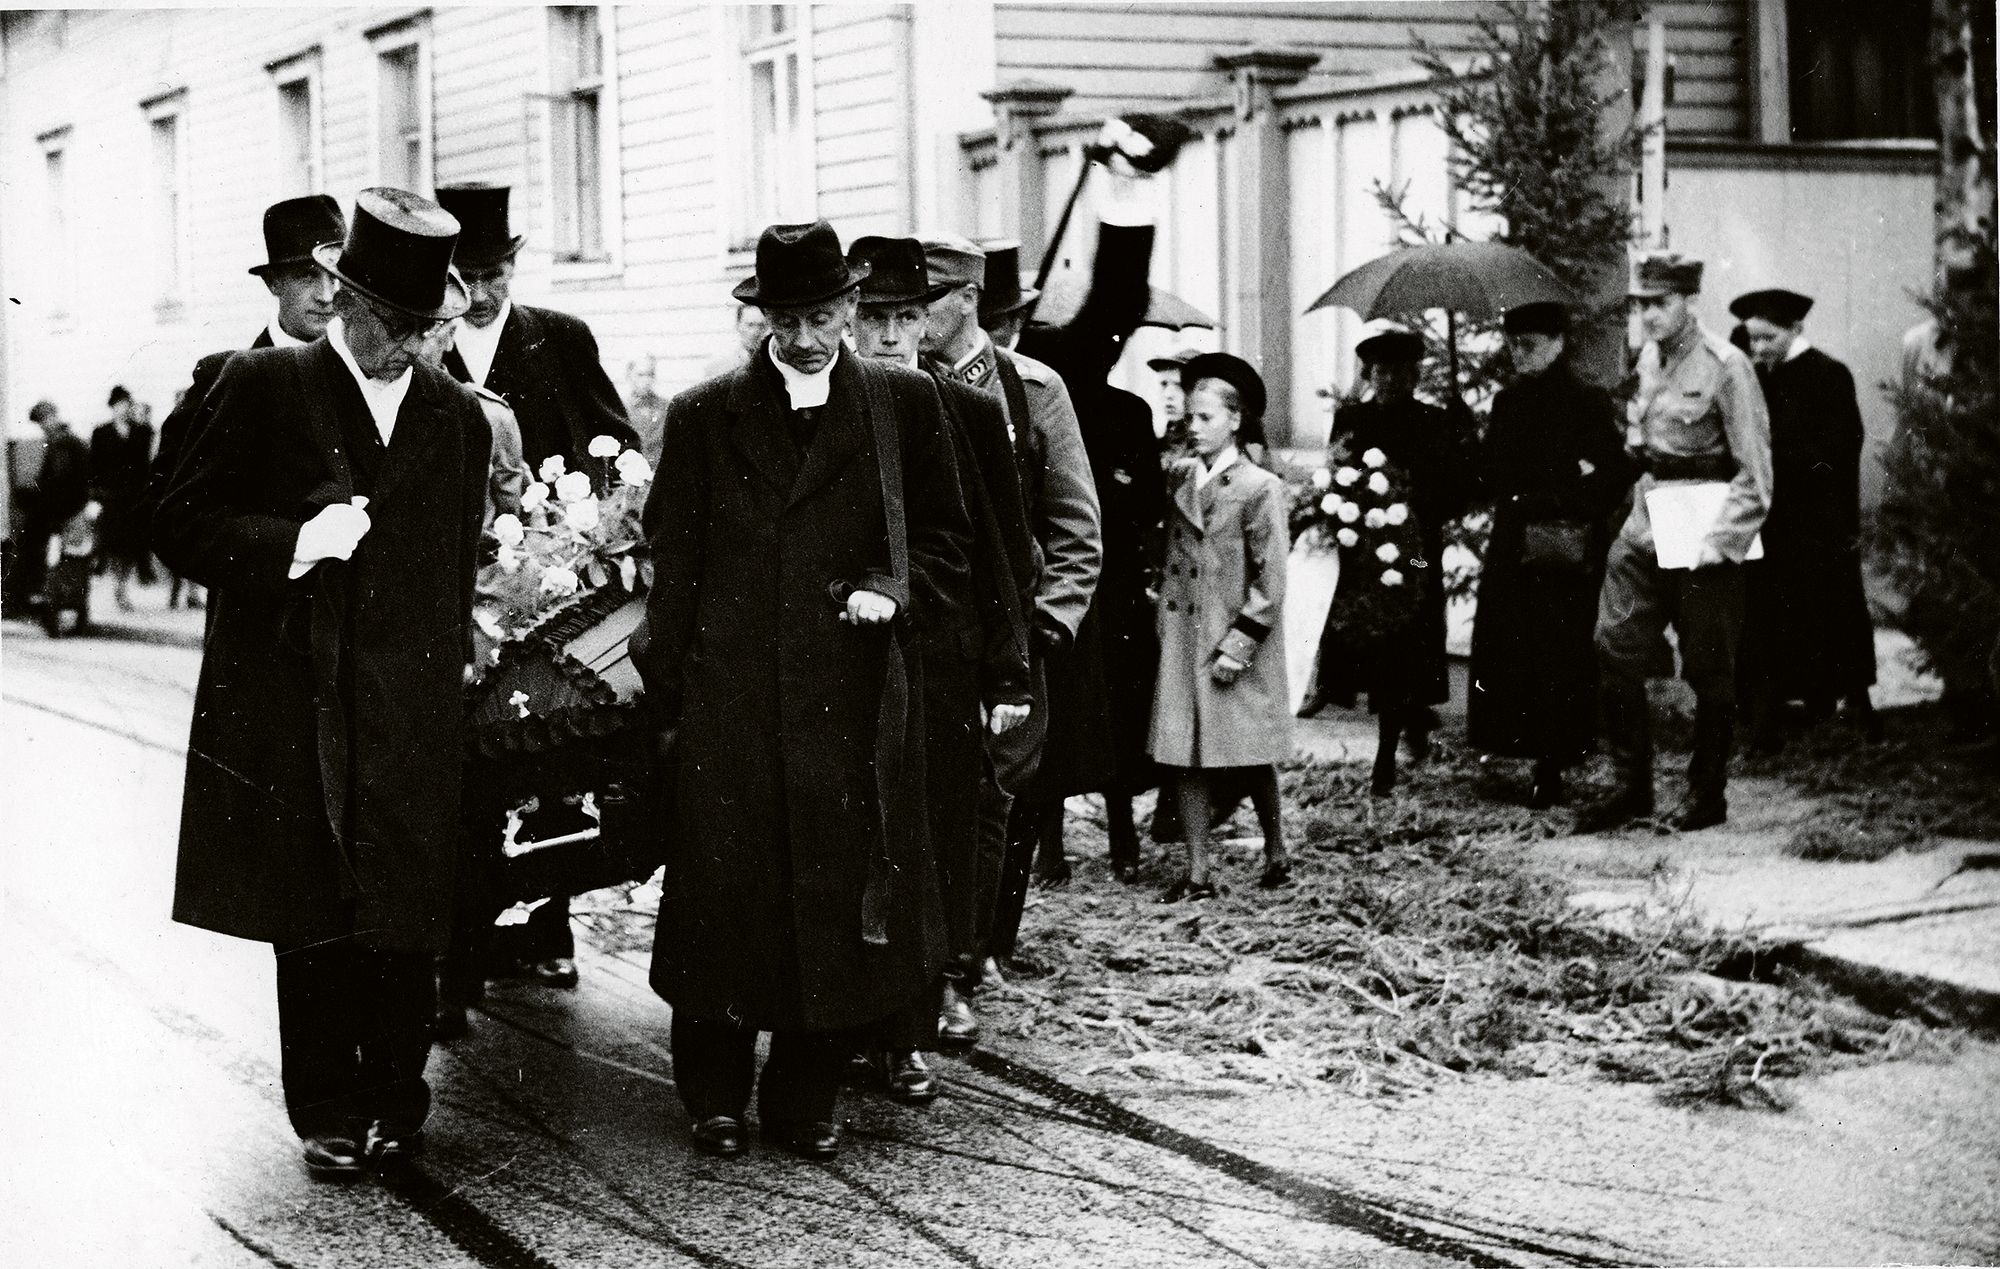 Piispa Yrjö Wallinmaan hautajaissaatto lähdössä Oulun pappilasta heinäkuussa 1943. © Anna Forsberg/Pohjois-Pohjanmaan museo